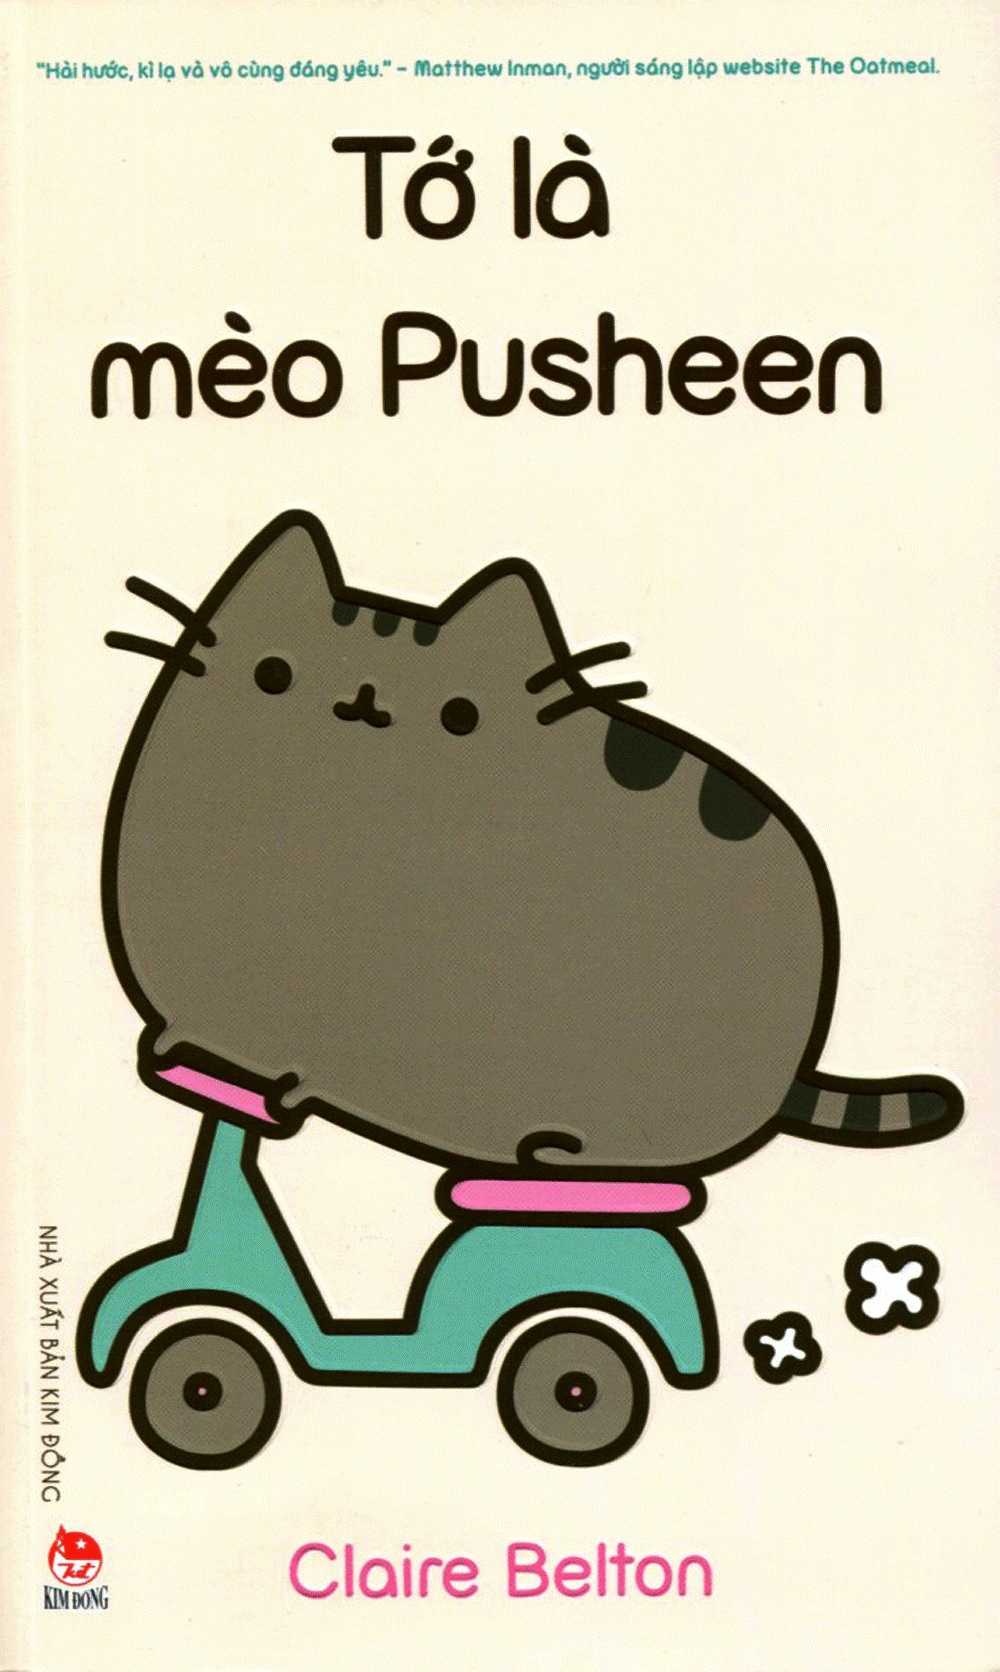 Hình nền mèo Pusheen đáng yêu sẽ làm chủ nhân của chúng ta cảm thấy thư giãn và vui vẻ chỉ nhìn thấy chúng. Những bức ảnh về Pusheen cũng thường mang theo những thông điệp hài hước, khiến cho mỗi ngày của chúng ta càng thêm tươi sáng và đầy năng lượng.